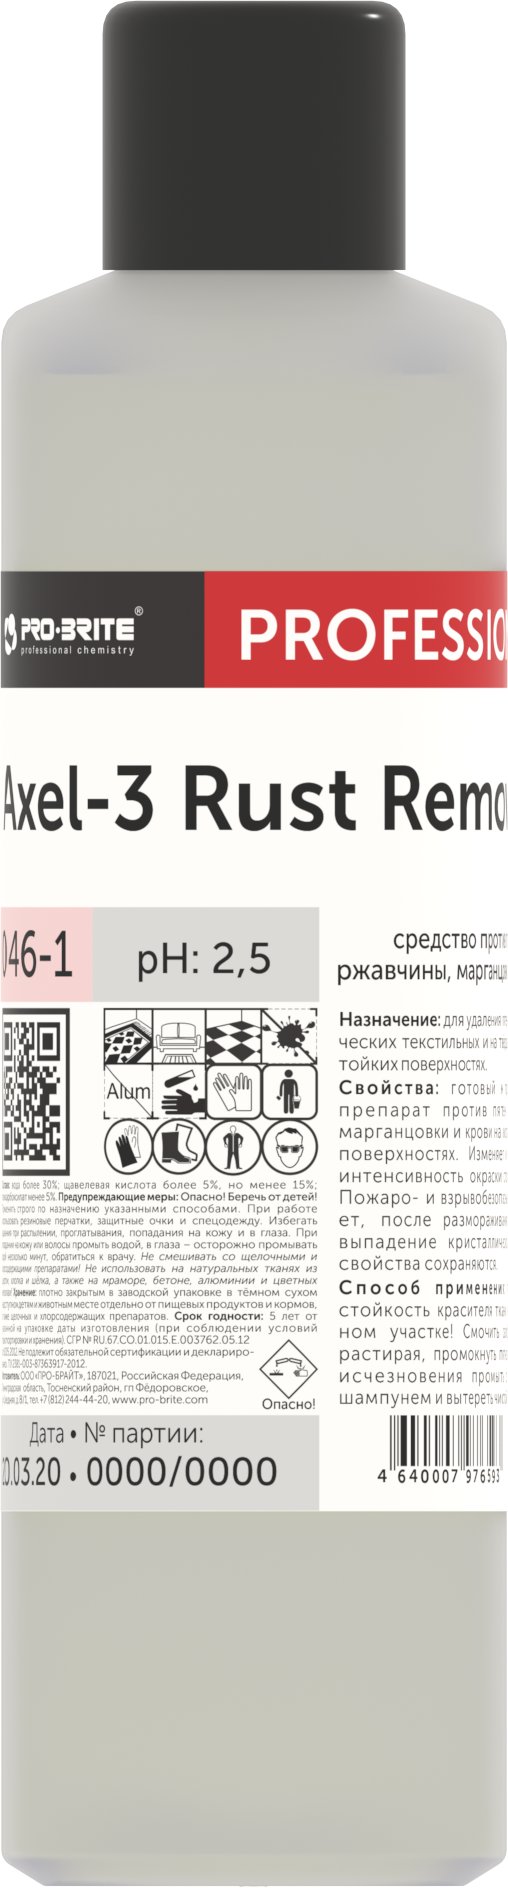 Профхим спец пятновывод кровь-ржавч Pro-Brite/AXEL-3 Rust Remover, 1л - фотография № 2